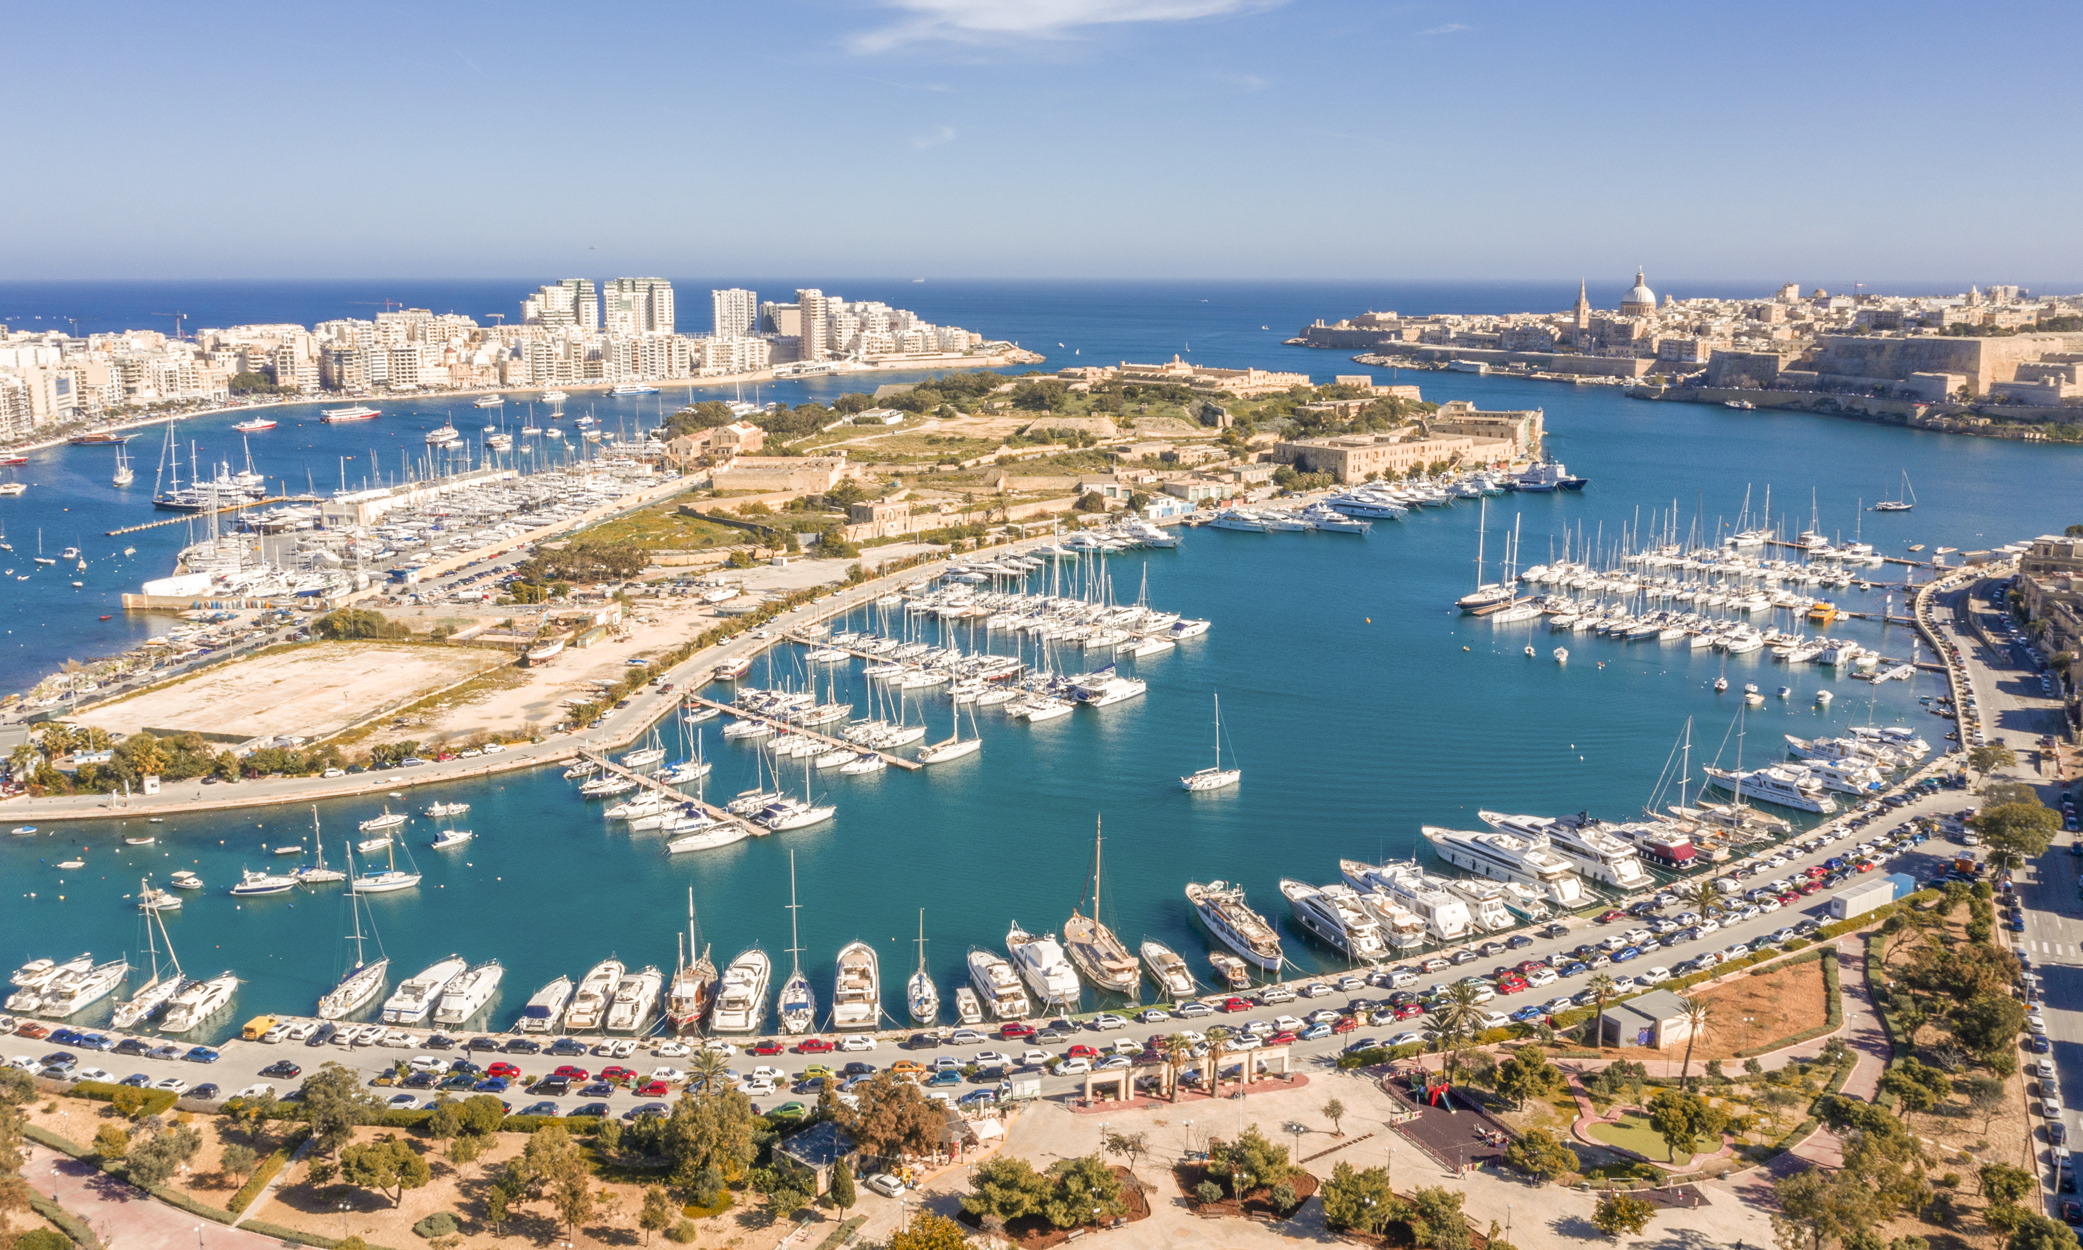 Le nouveau programme de résidence permanente de Malte remplace le programme de résidence et de visa de Malte